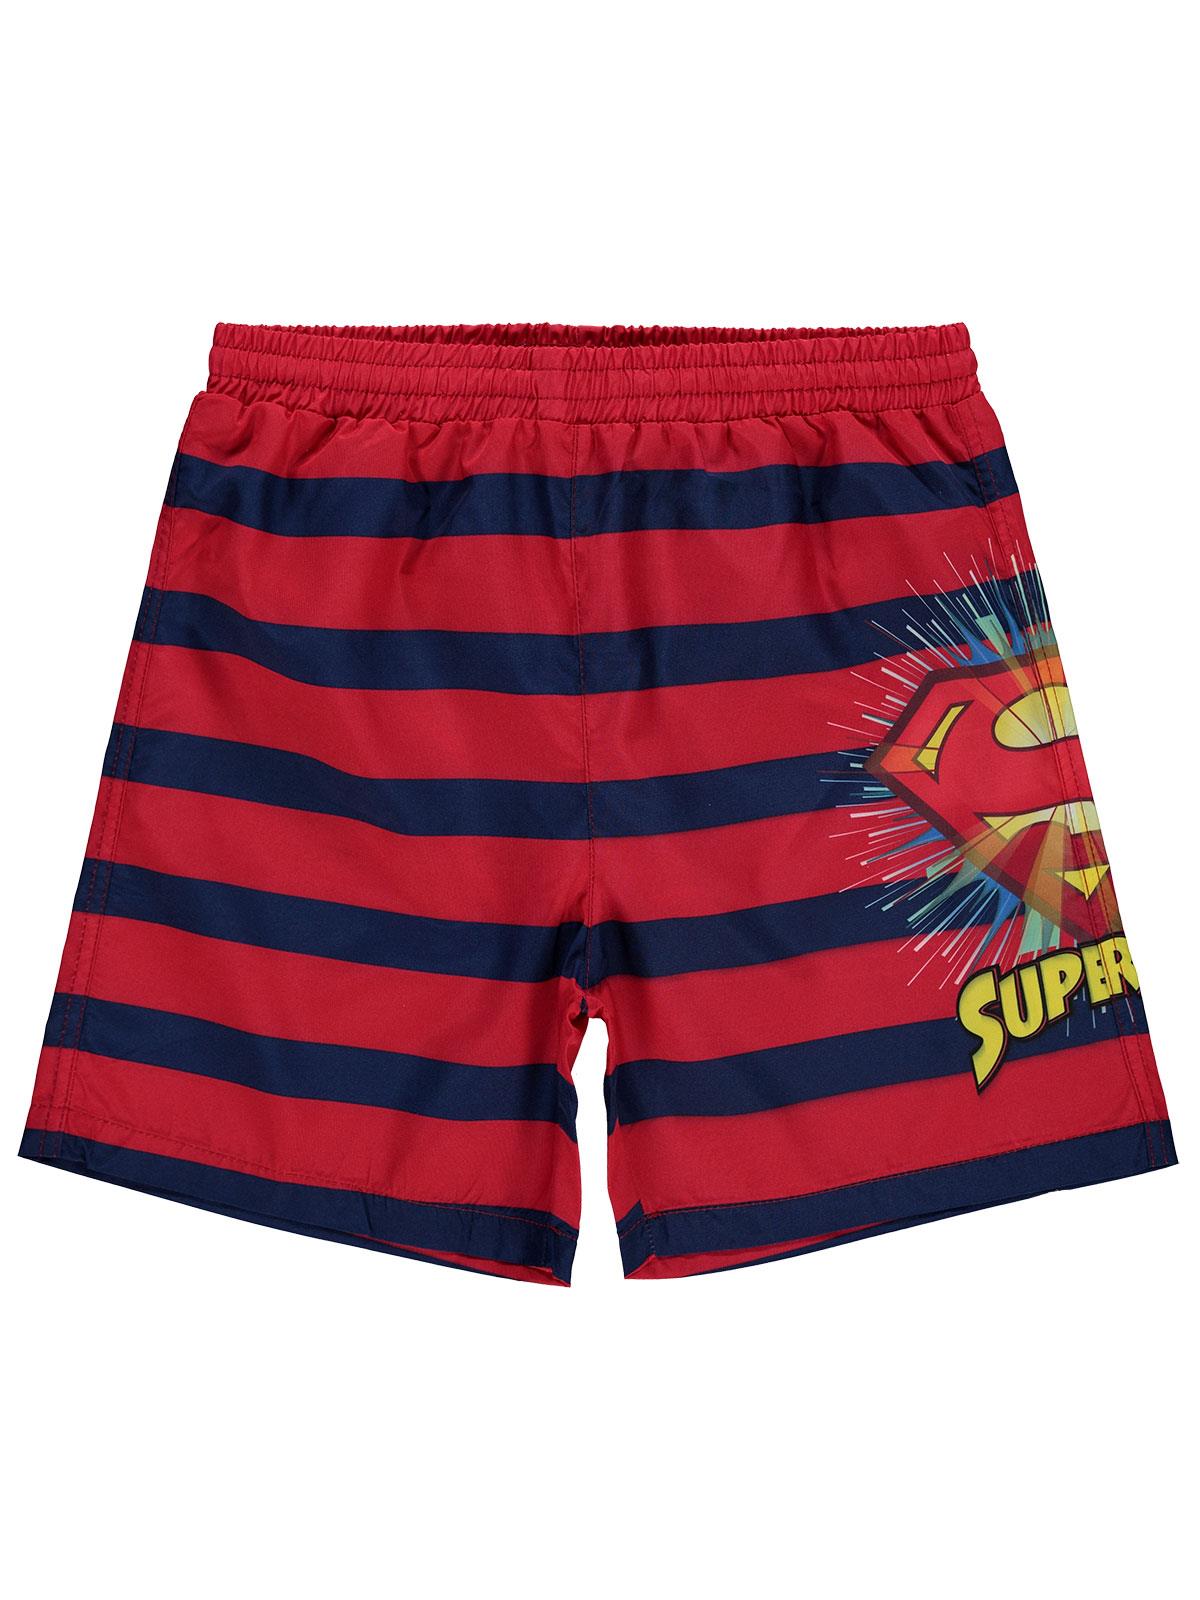 Süperman Erkek Çocuk Deniz Şortu 10-13 Yaş Kırmızı